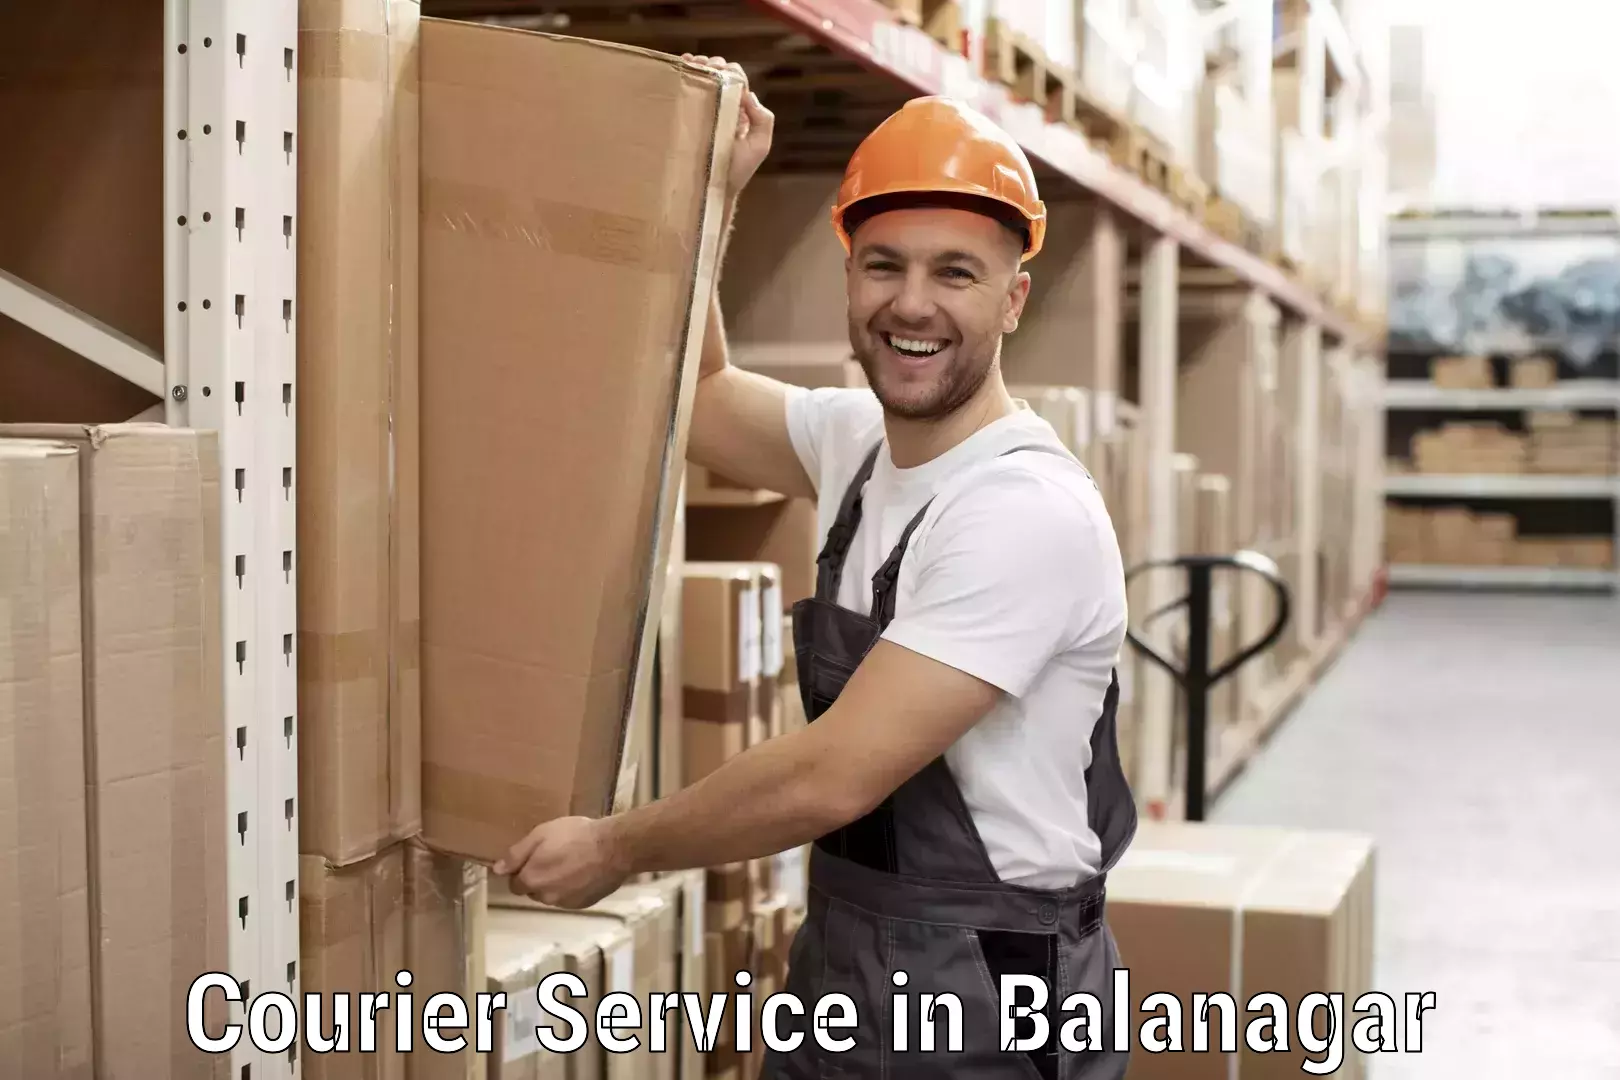 Premium courier services in Balanagar